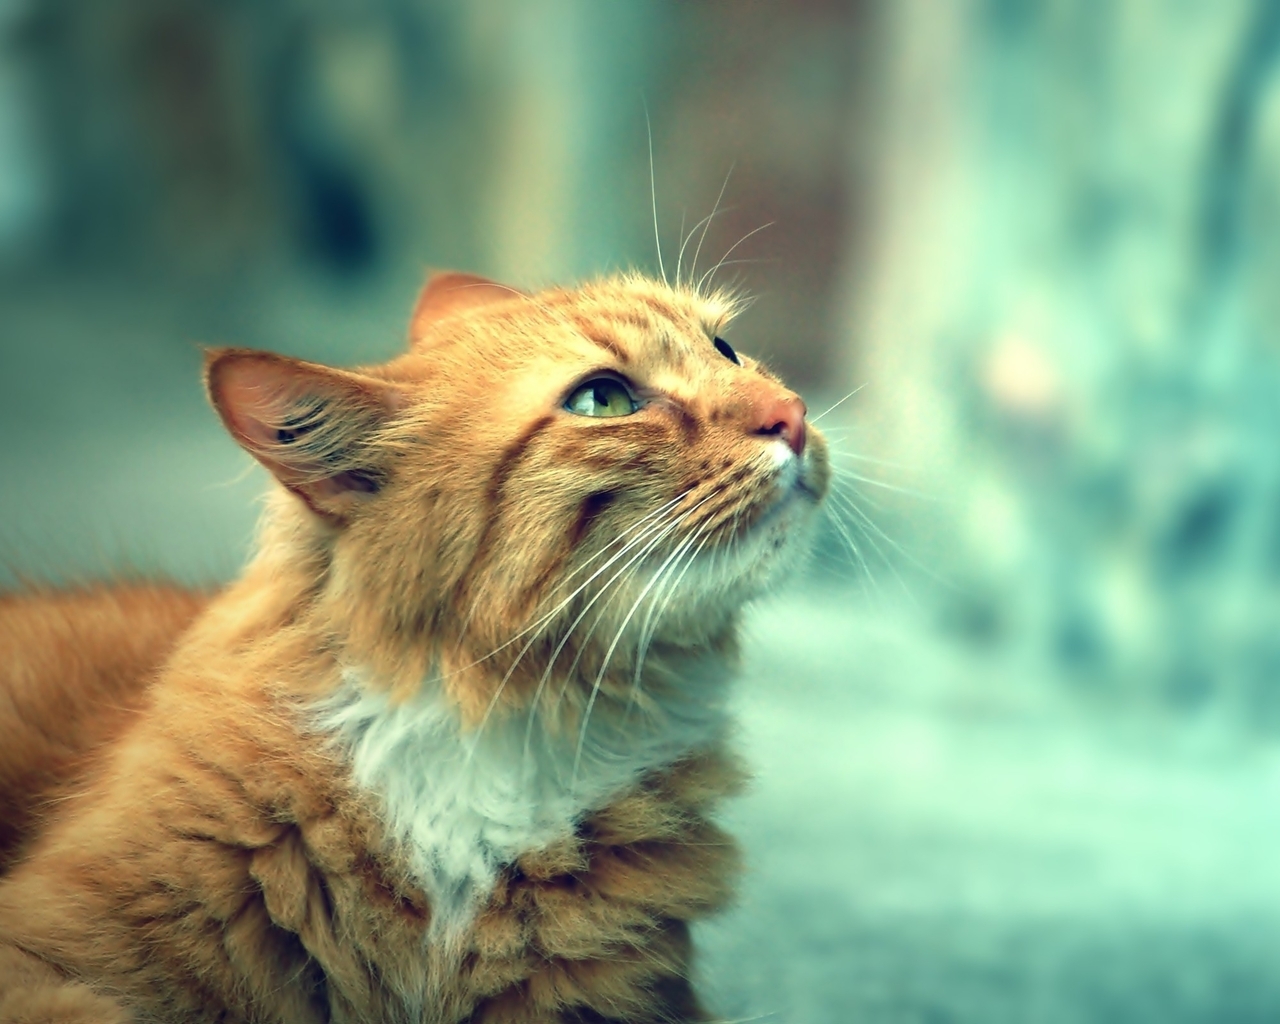 Image: Cat, red, looks, blur